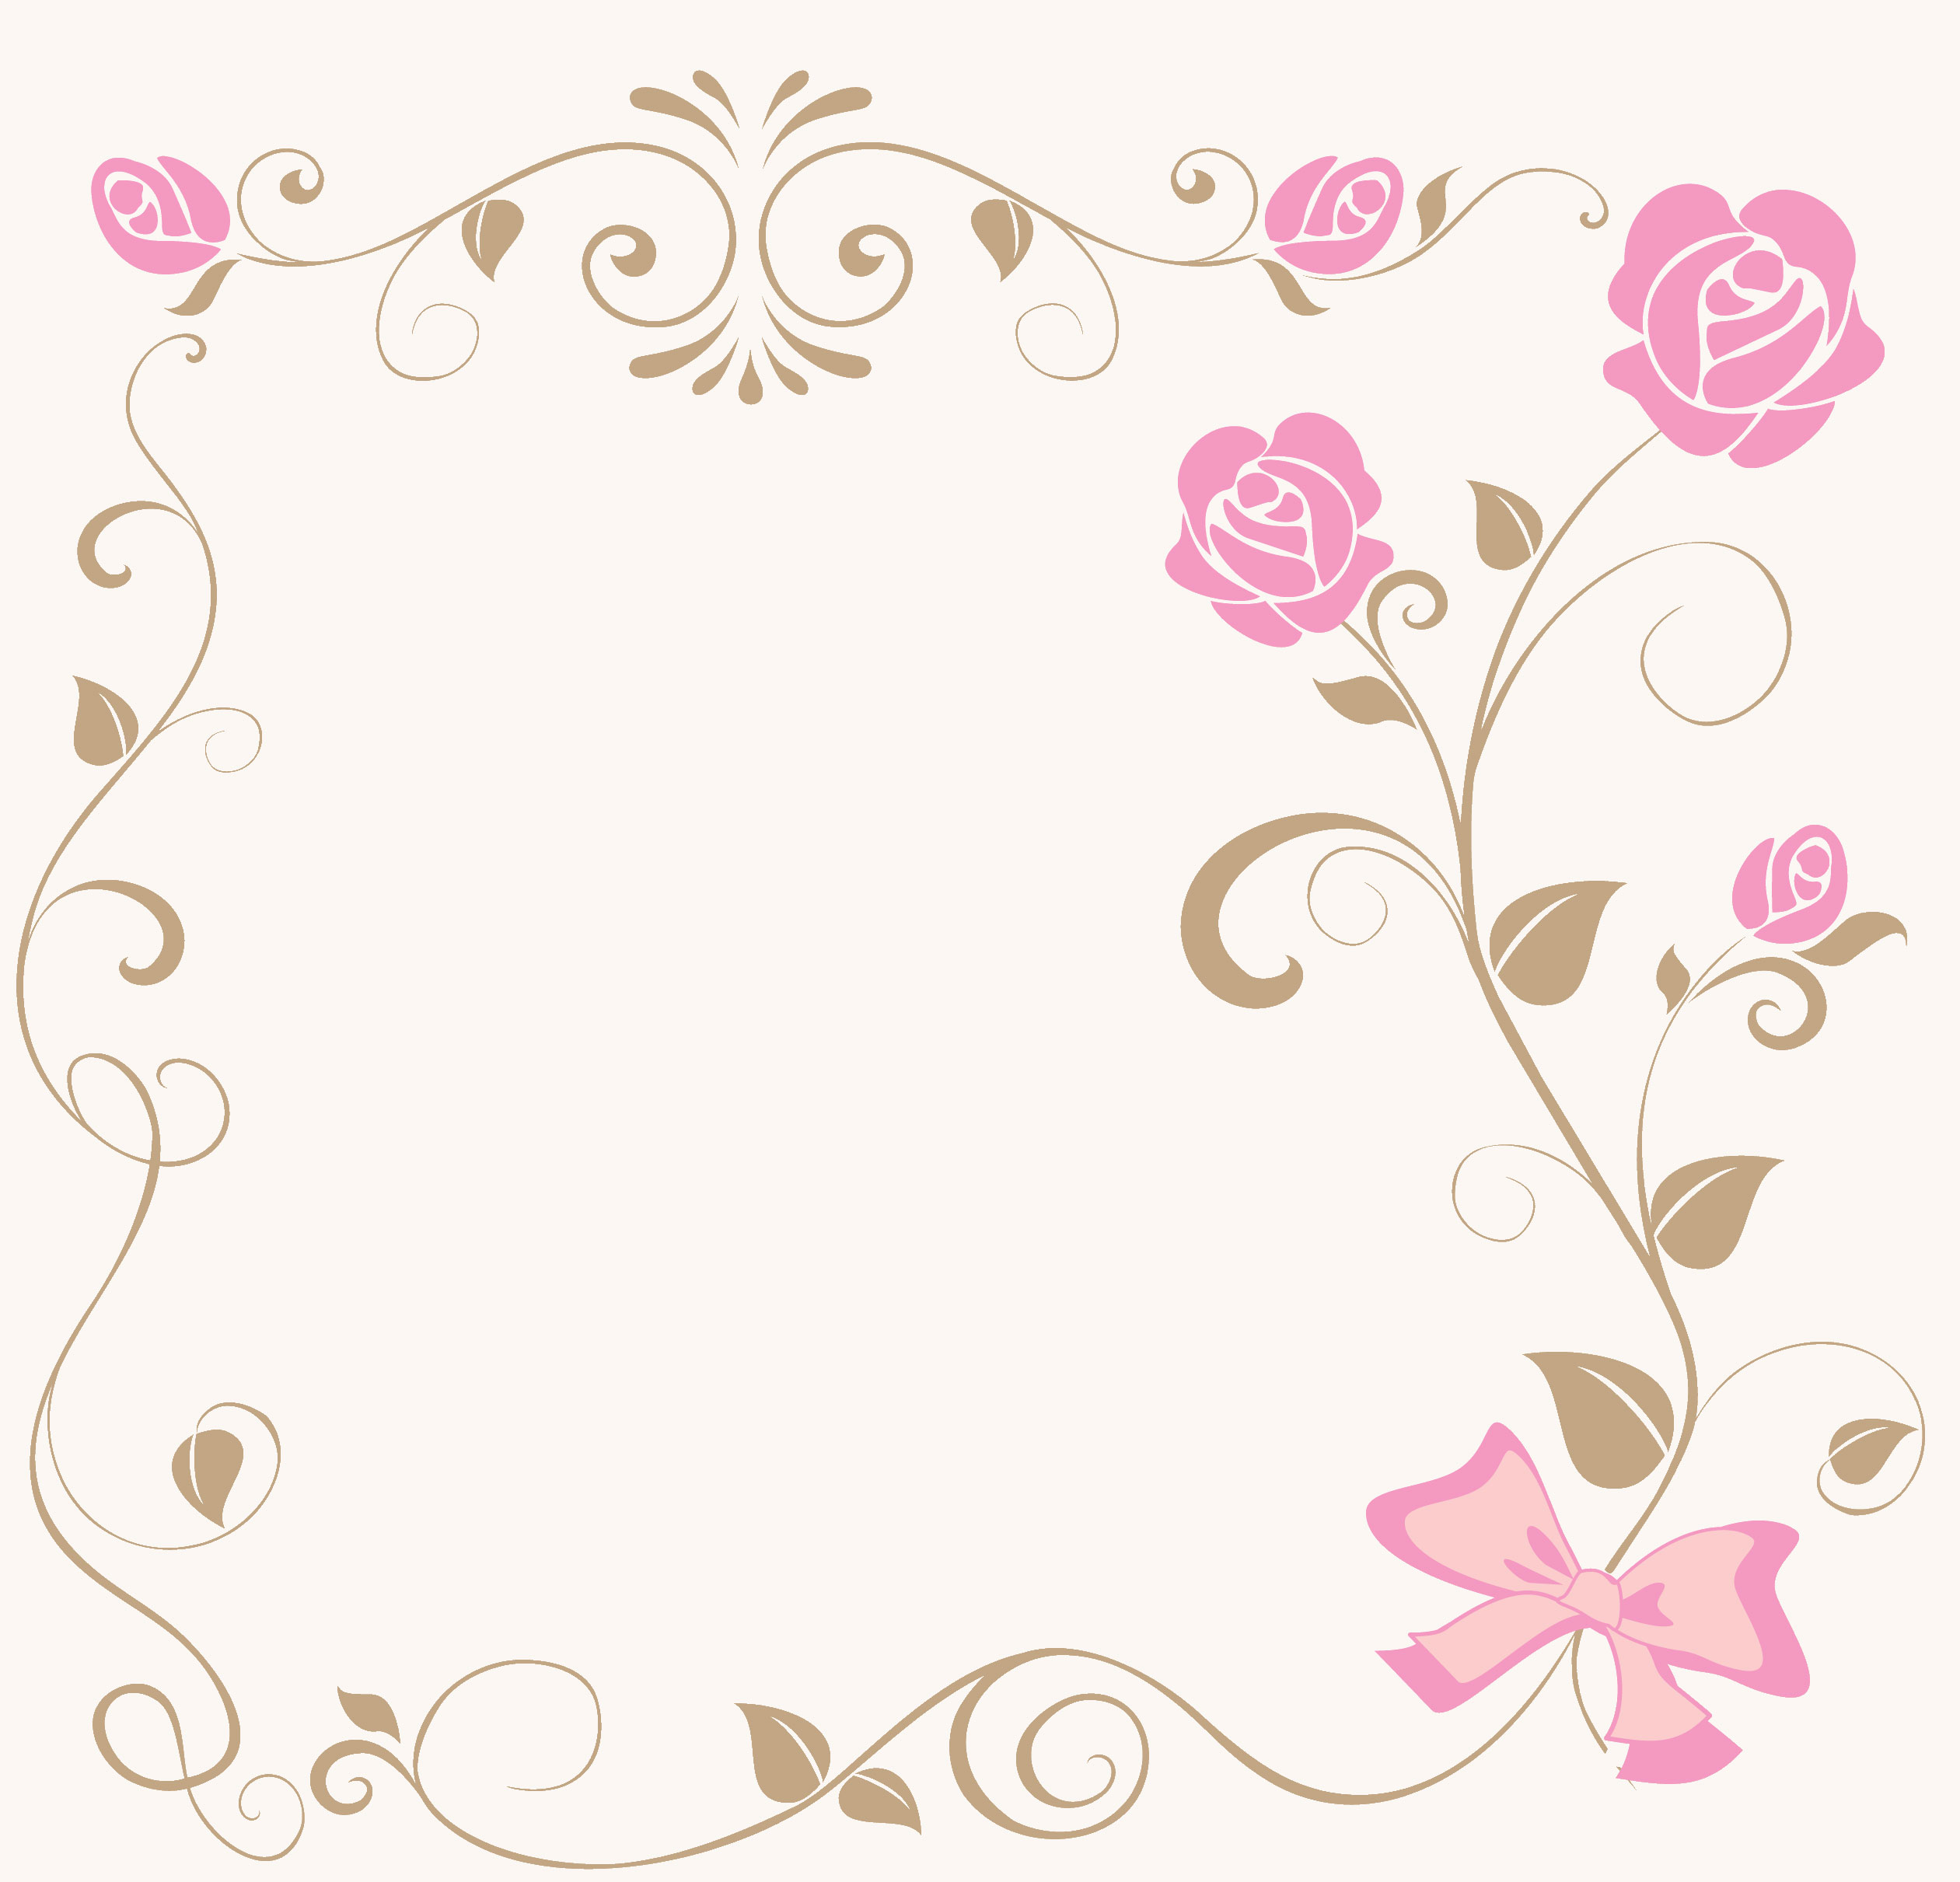 バラの画像 イラスト 壁紙 背景用 No 6 茎フレーム ピンクバラ